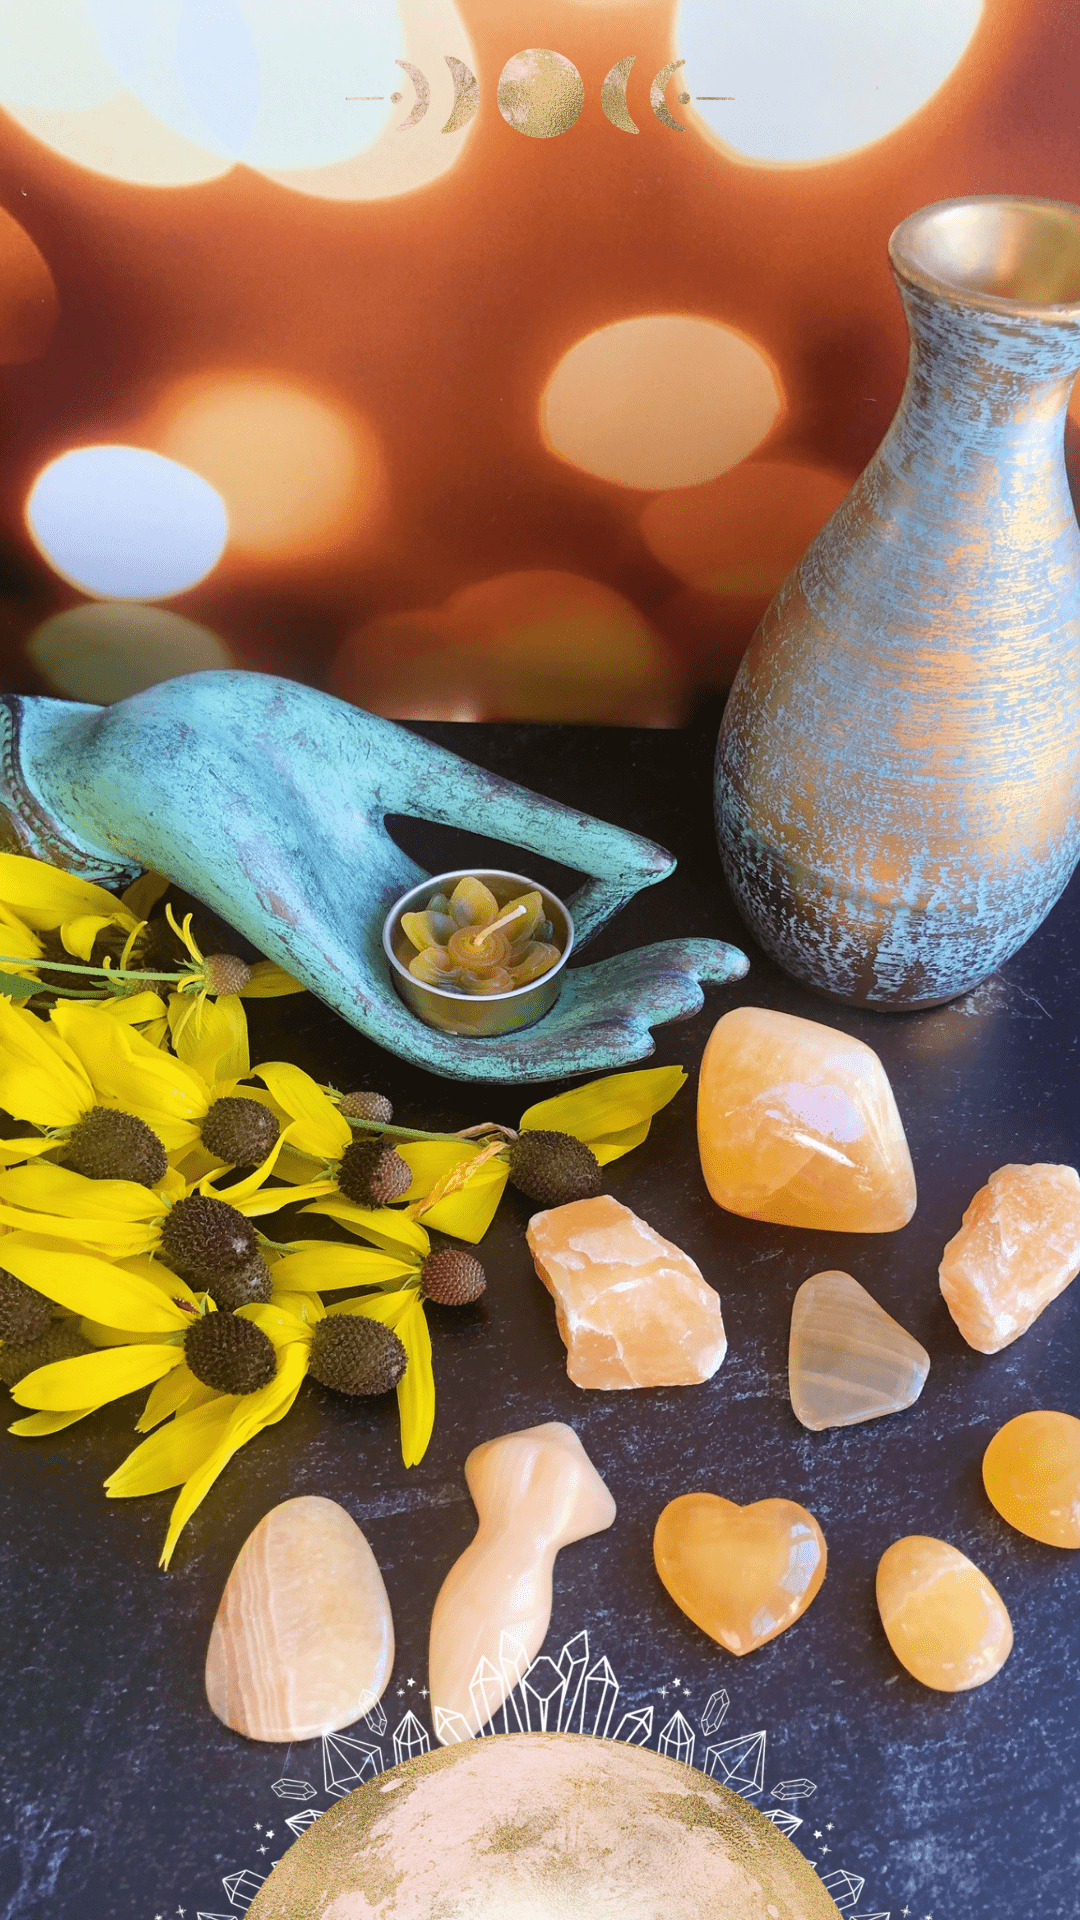 Healing Properties of Orange Calcite